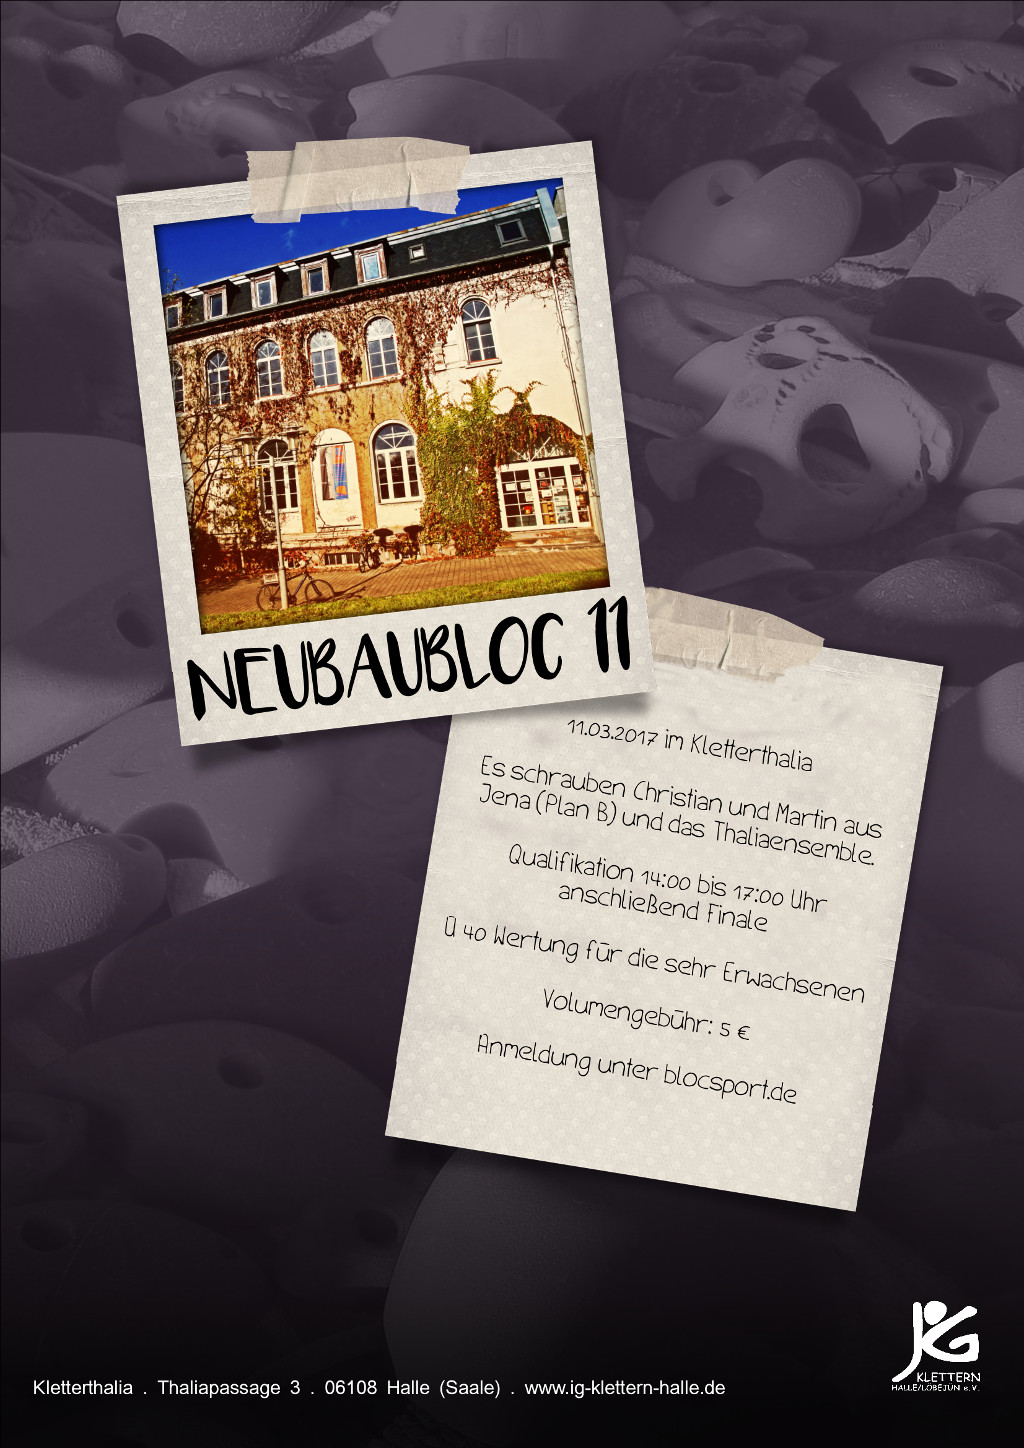 Poster for Neubaubloc 11